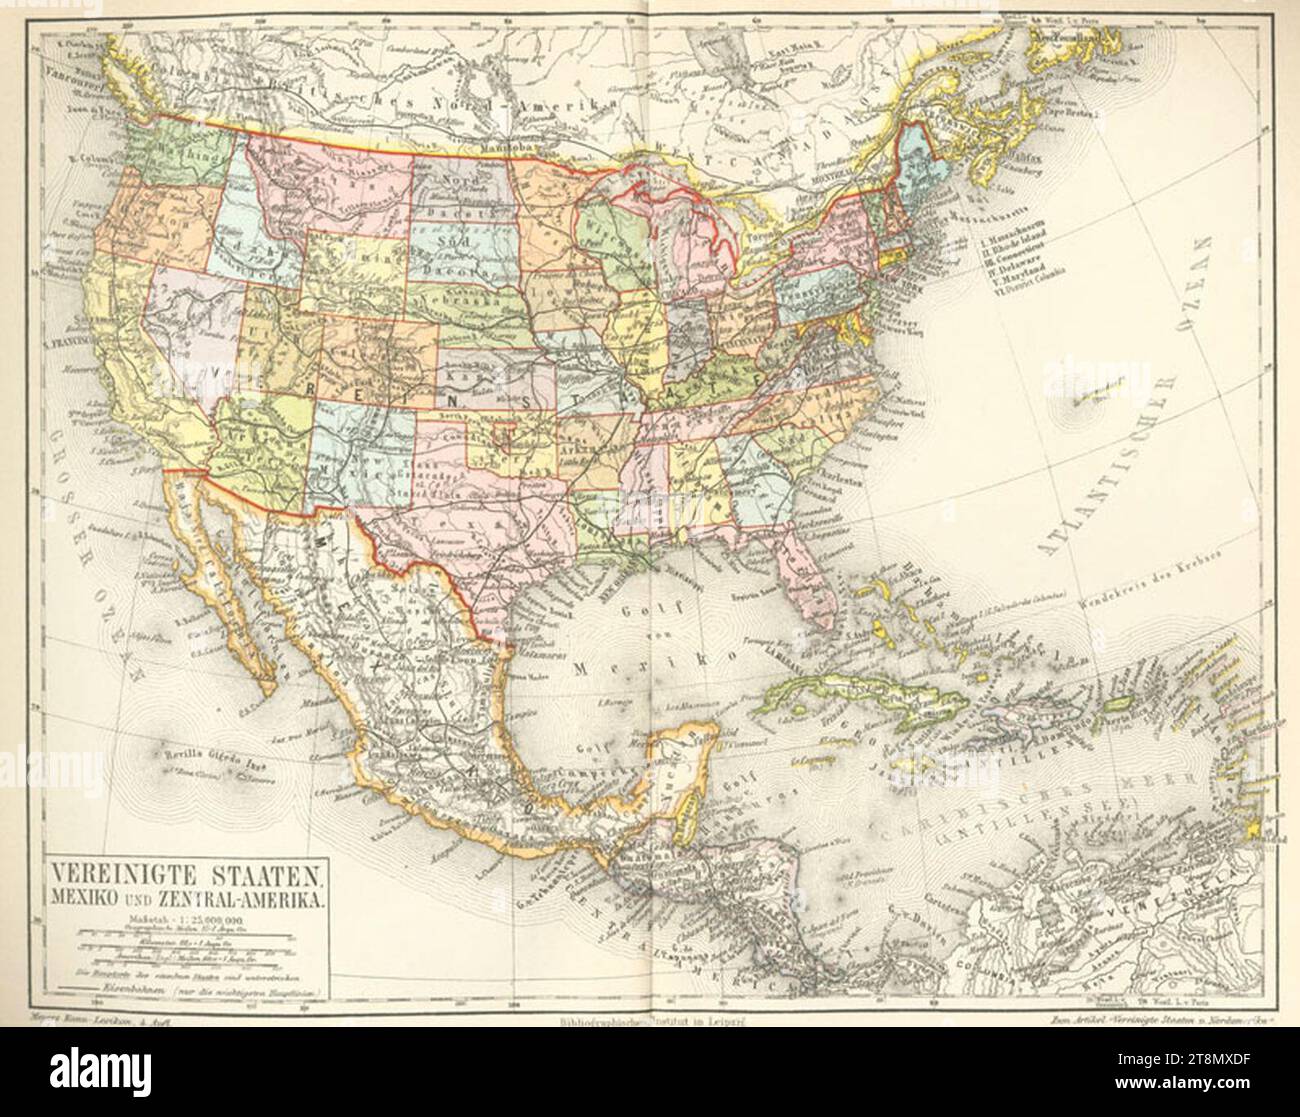 Vereinigte Staaten, Mexiko und Zentral-Amerika (Doppelseitige Farbkarte). Stock Photo